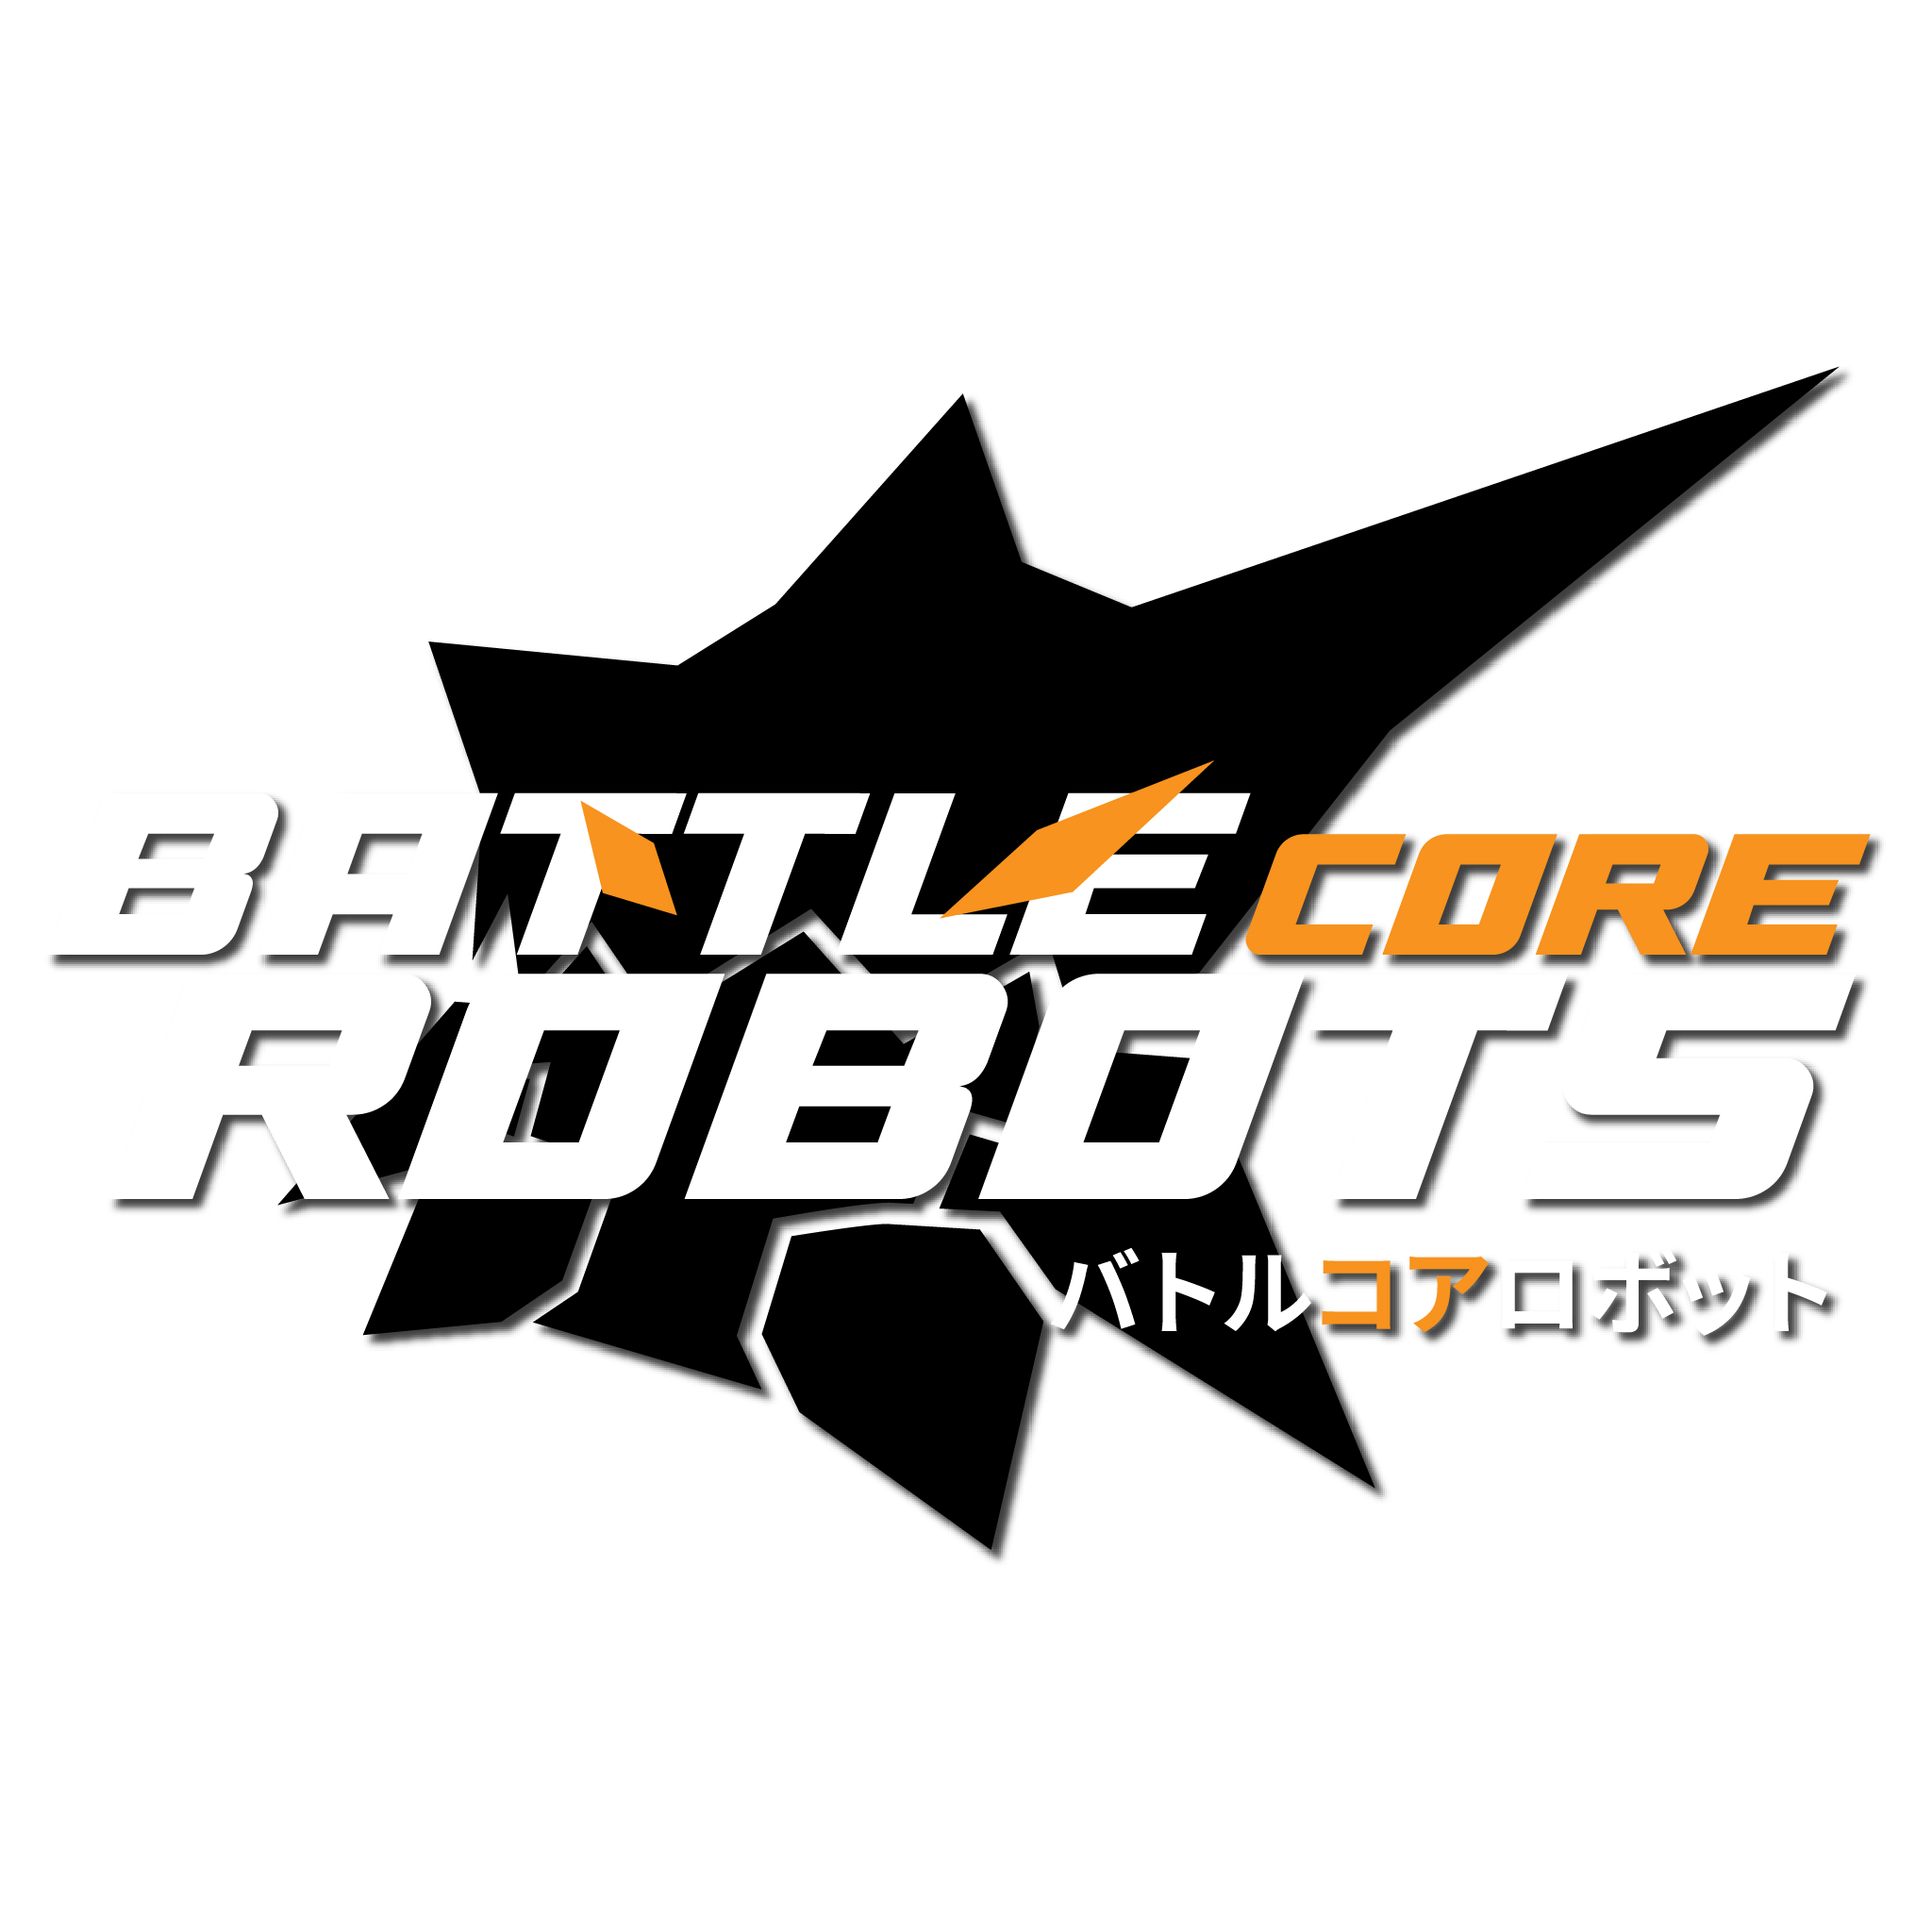 GameLogo_Battlecore_Robots